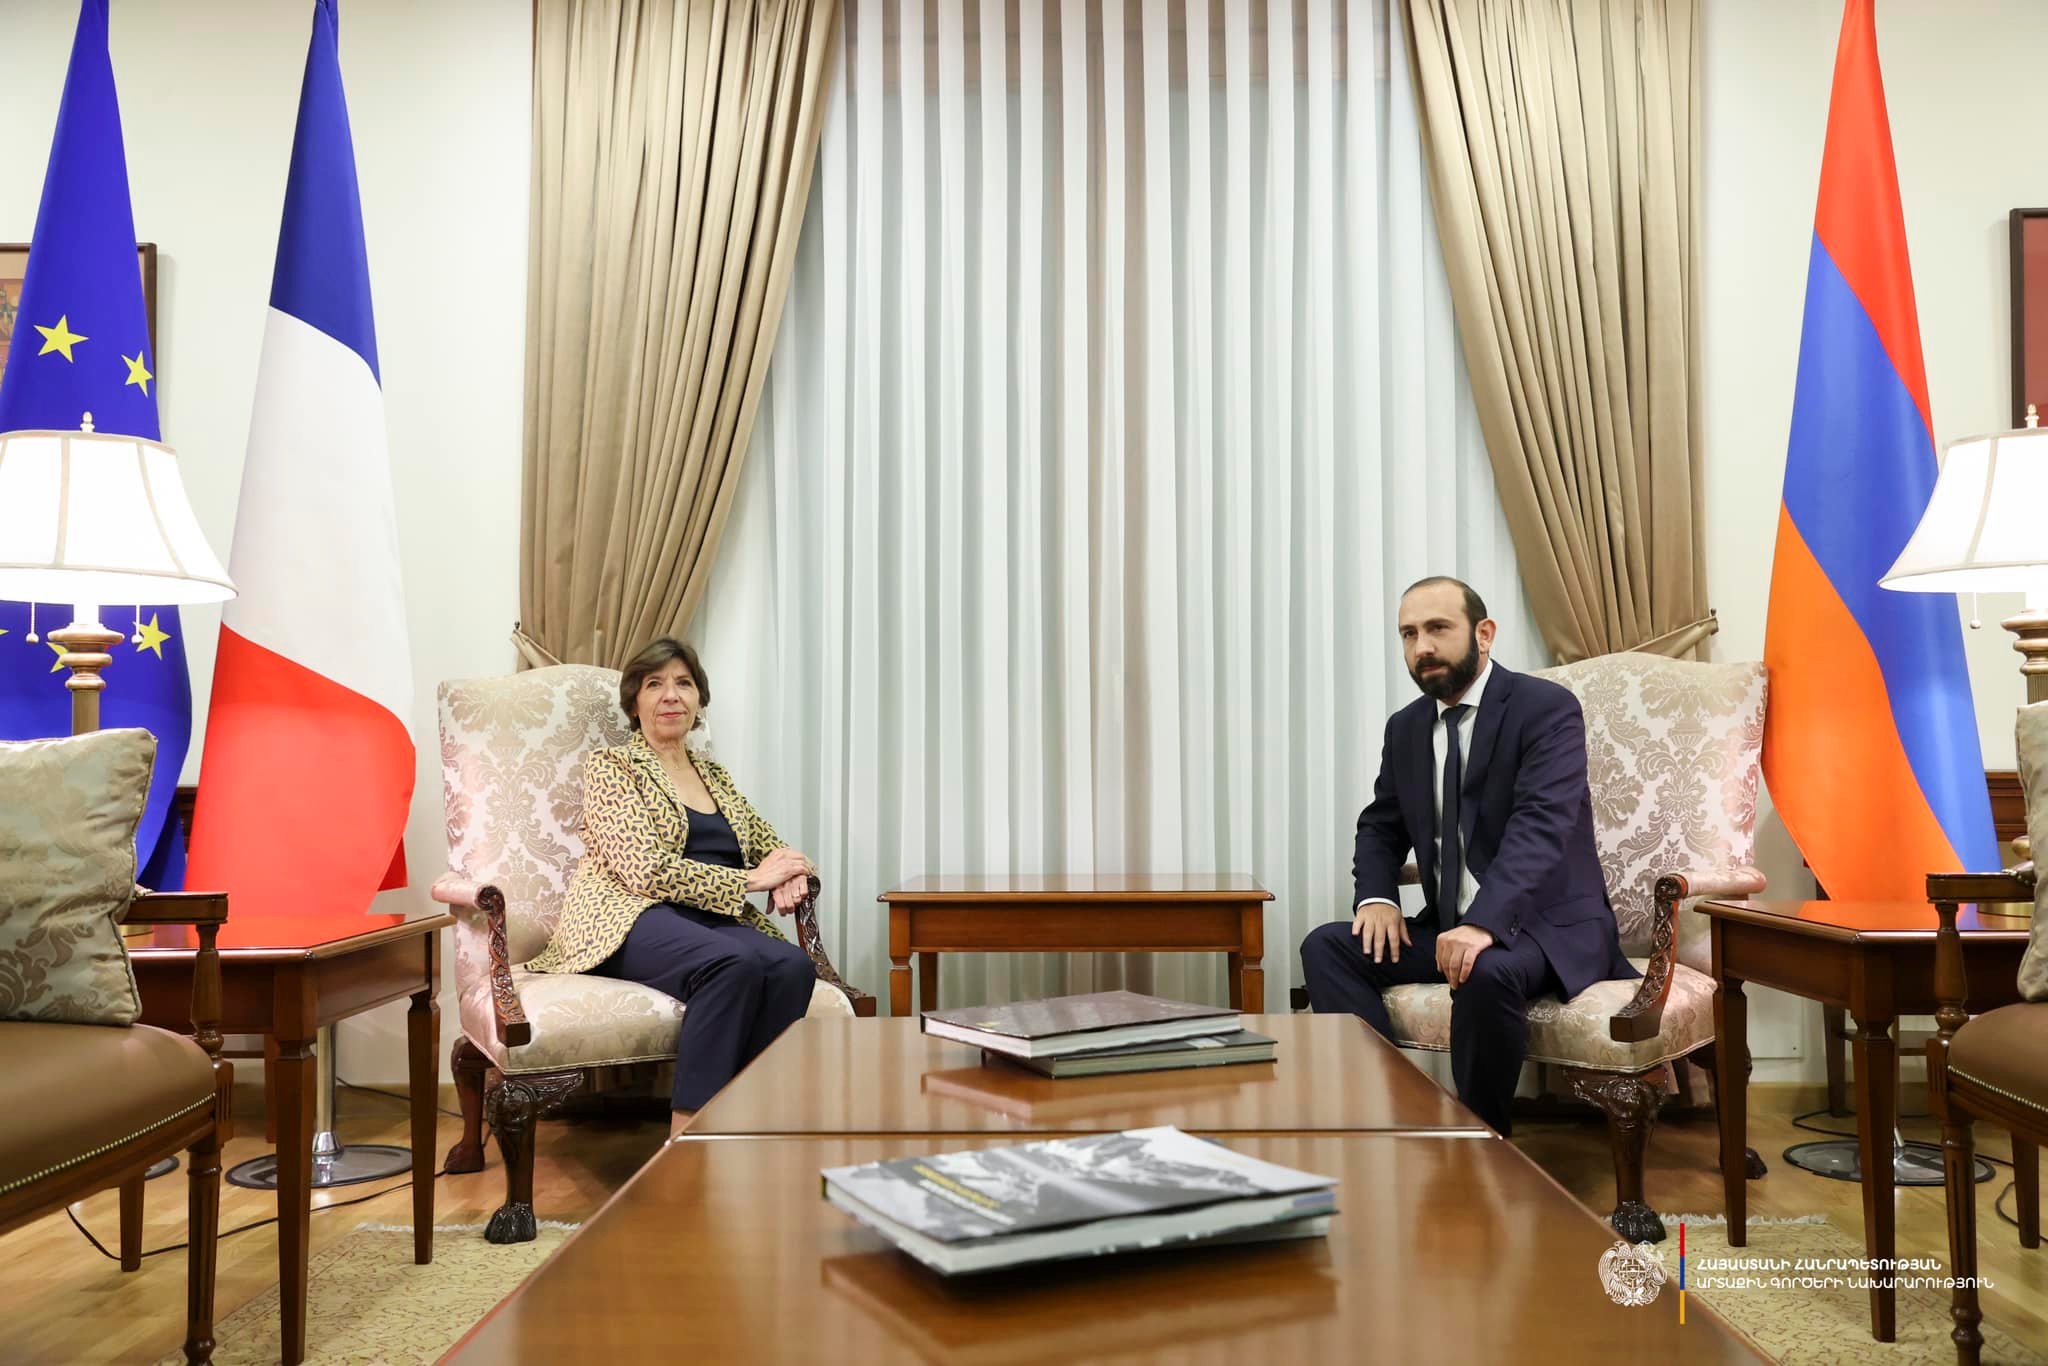 Մեկնարկել է Հայաստանի և Ֆրանսիայի ԱԳ նախարարների հանդիպումը, որին կհաջորդի ասուլիսը (ուղիղ)